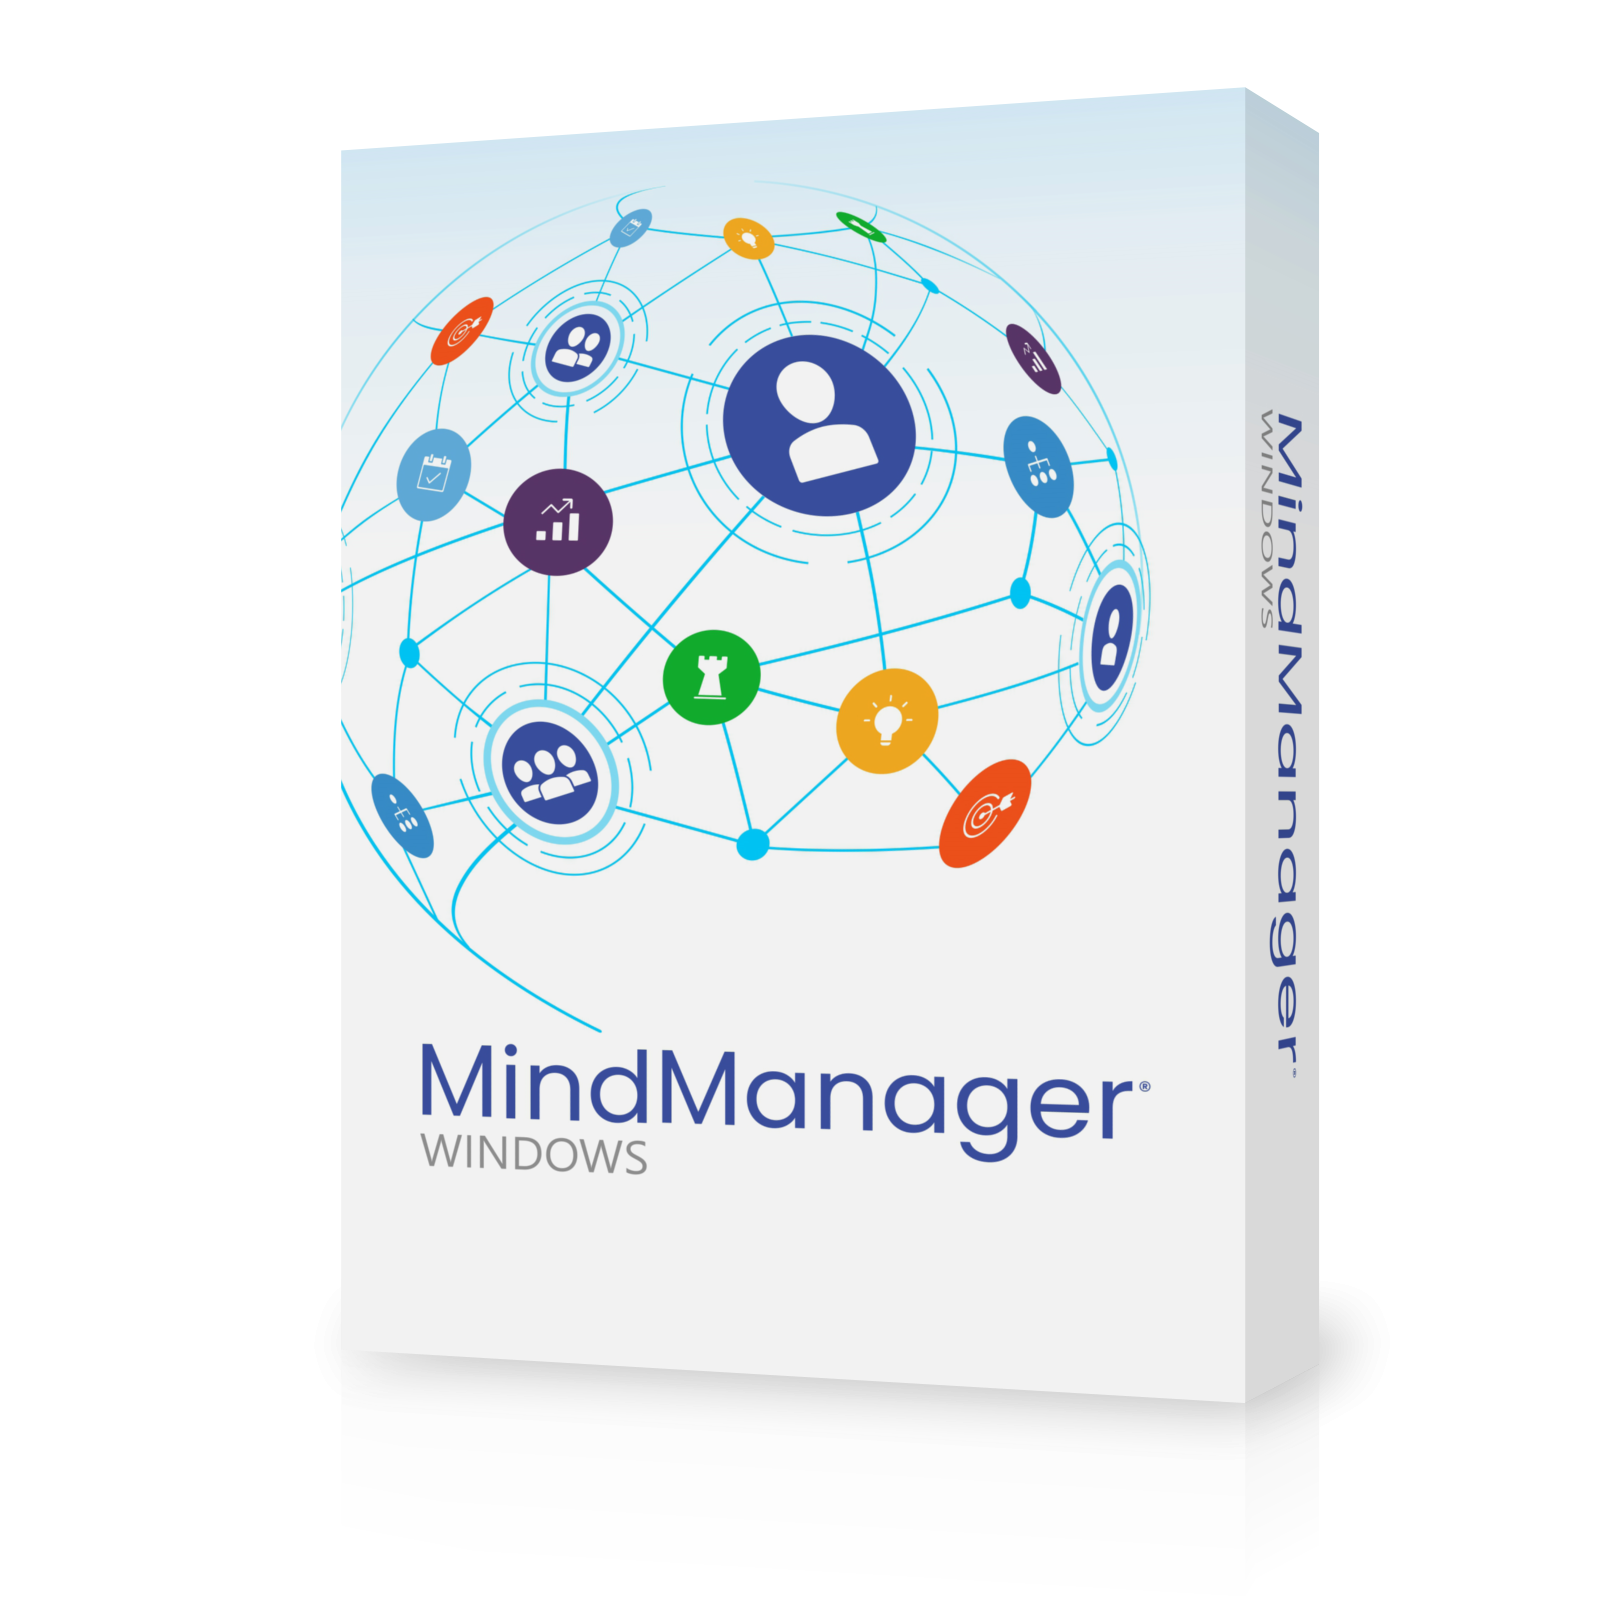 MindManager 21 for Win & MindManager 13 for Mac - licencja EDU, wieczysta, elektroniczna